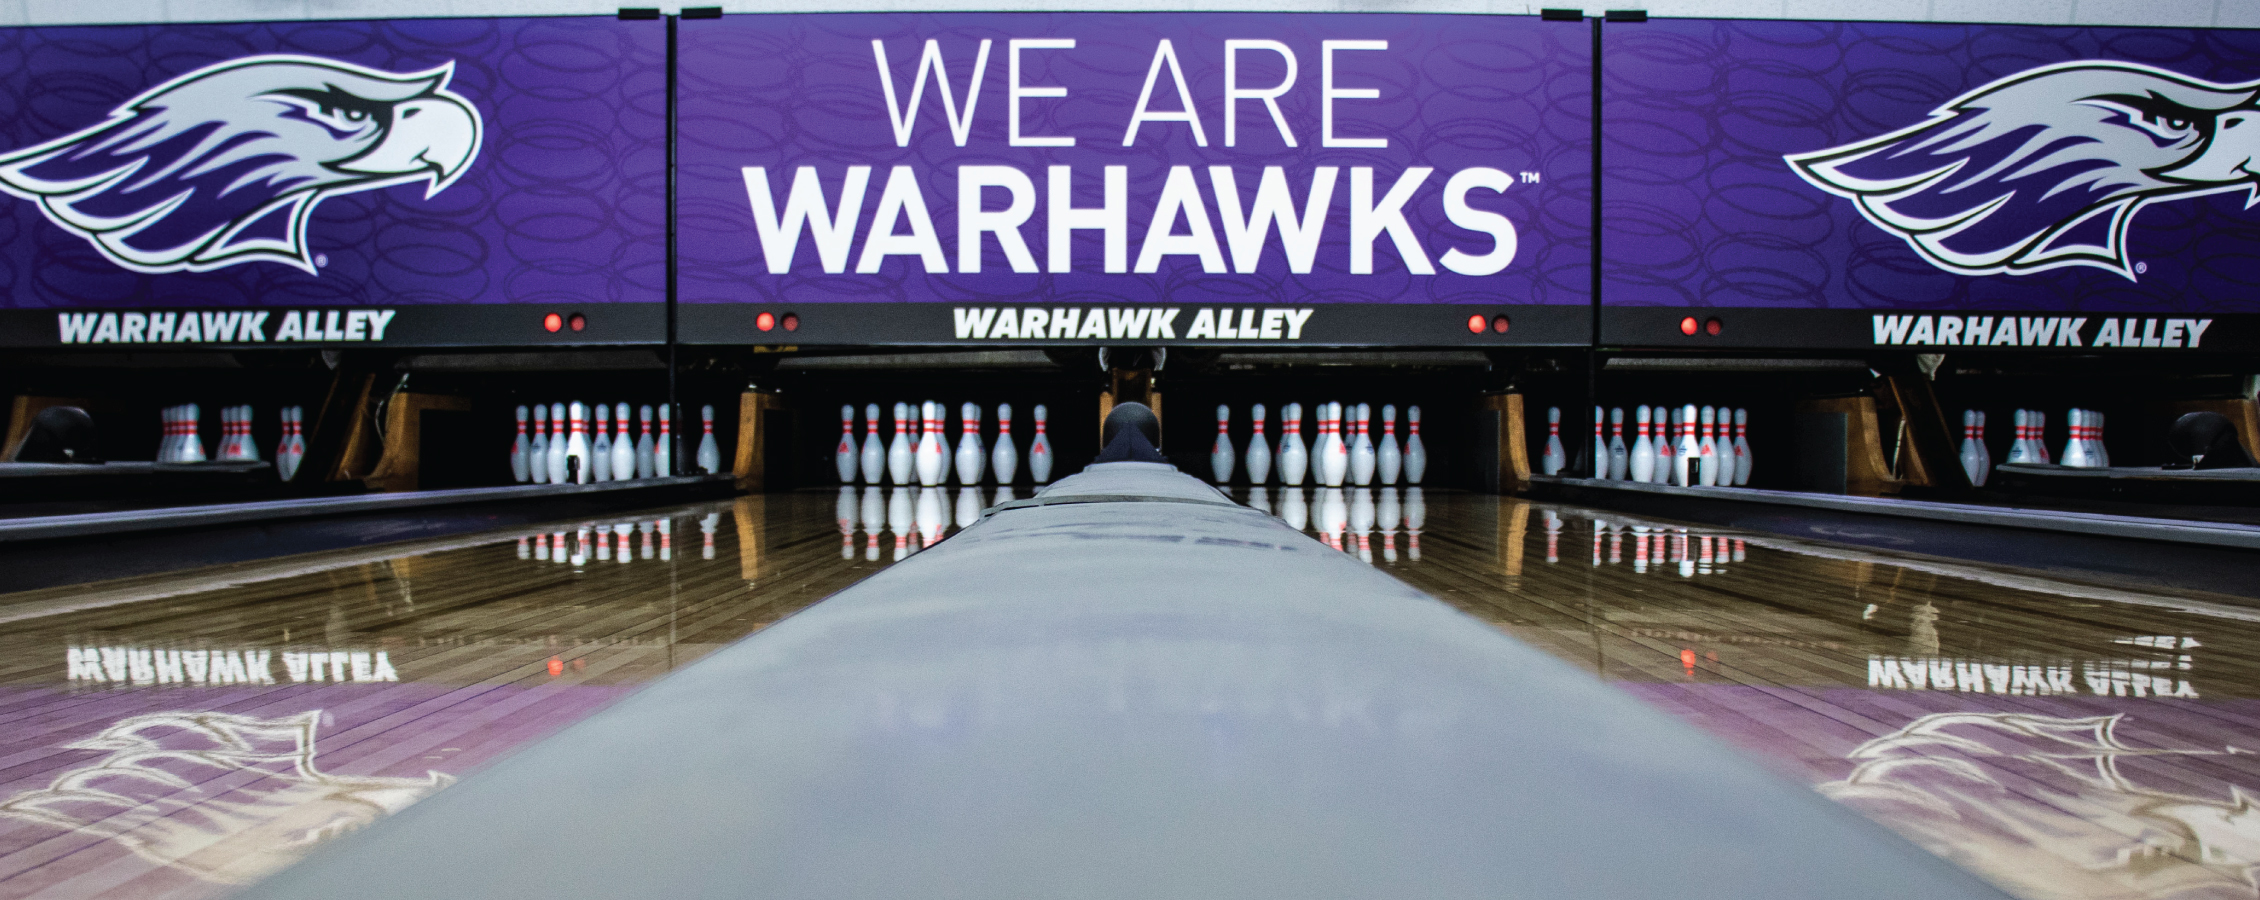 Warhawk Alley Bowling